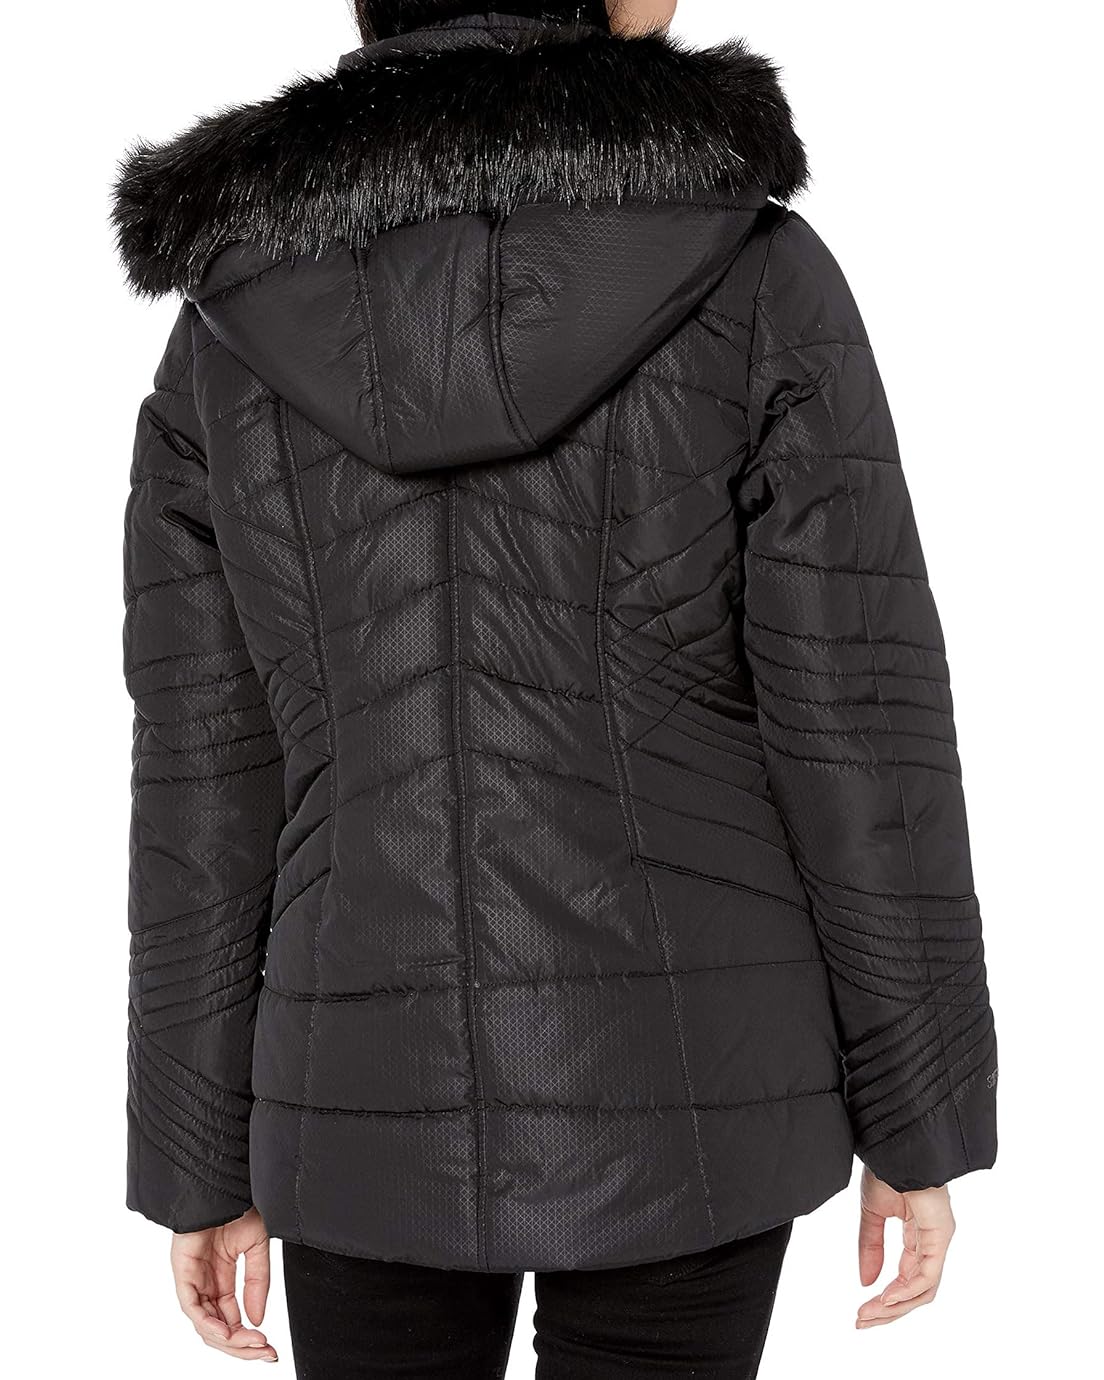 스케쳐스 SKECHERS Mens Warm Winter Jacket with Faux Trimmed Hood